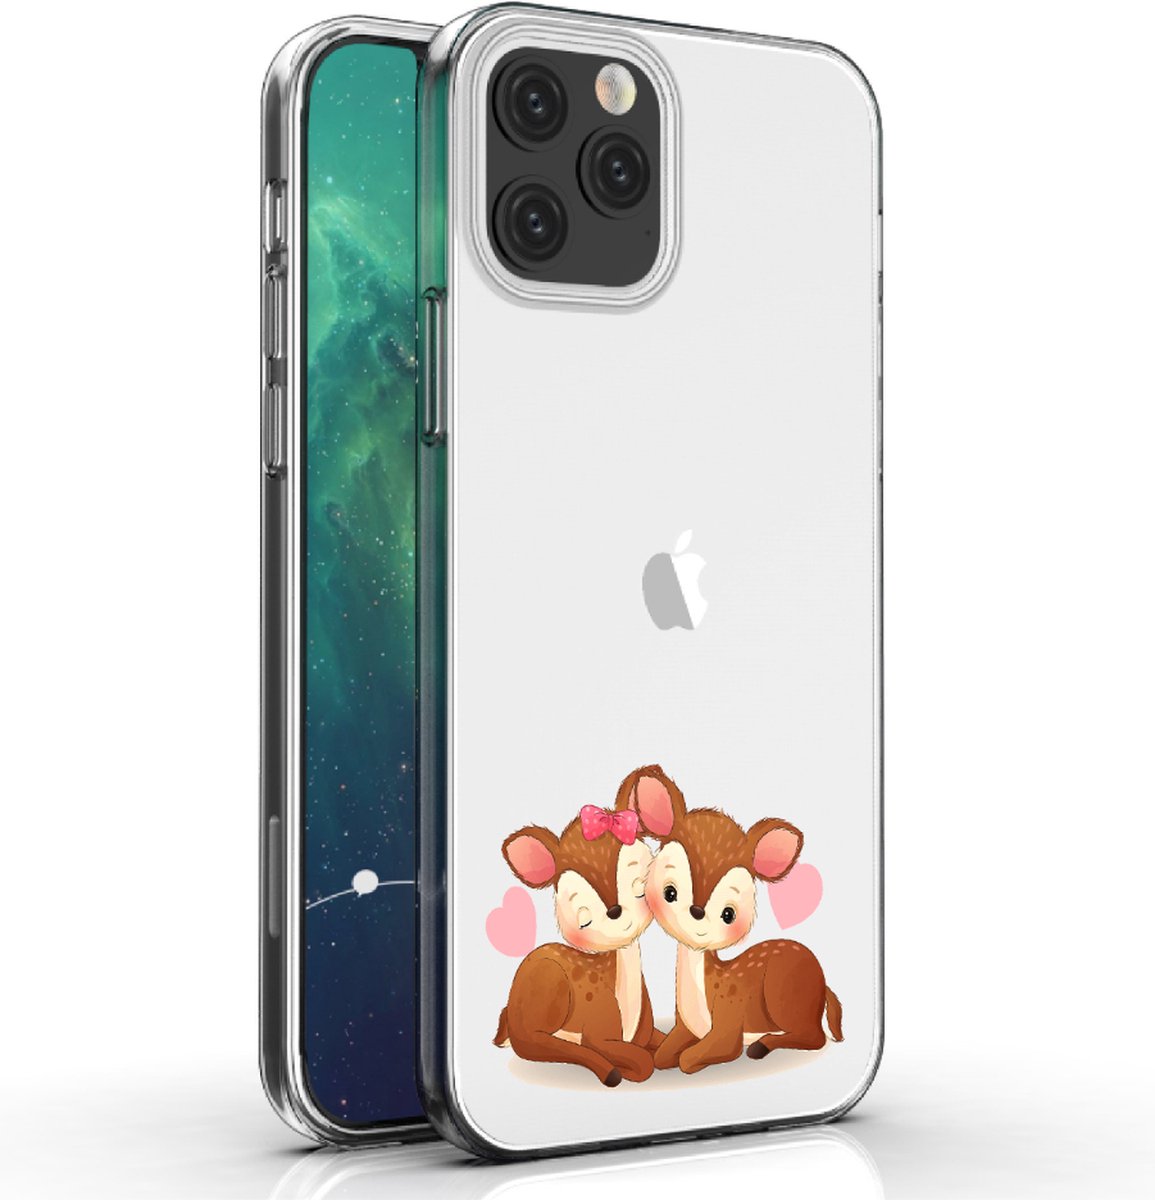 Apple Iphone 12 Pro telefoonhoesje transparant siliconen hoesje - Hertjes